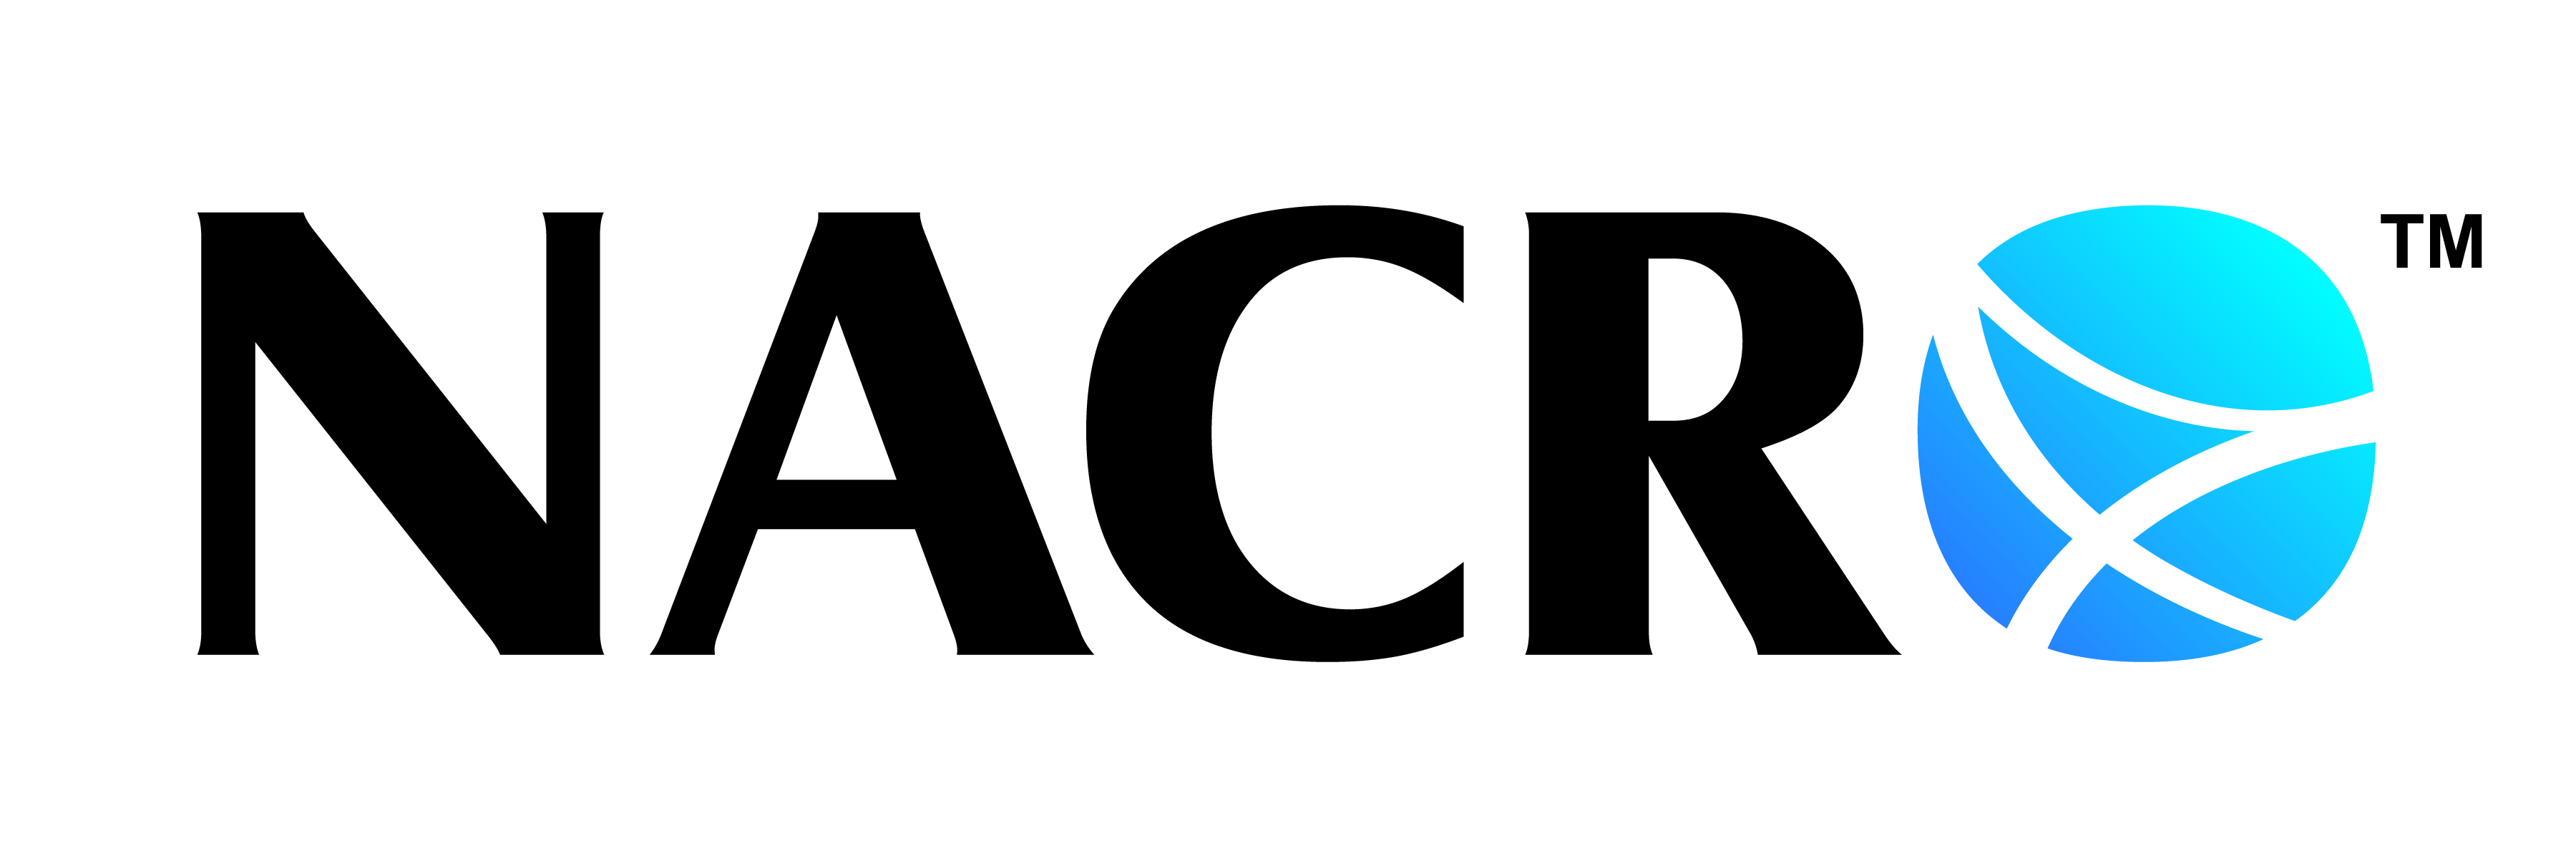 NACRO Logo